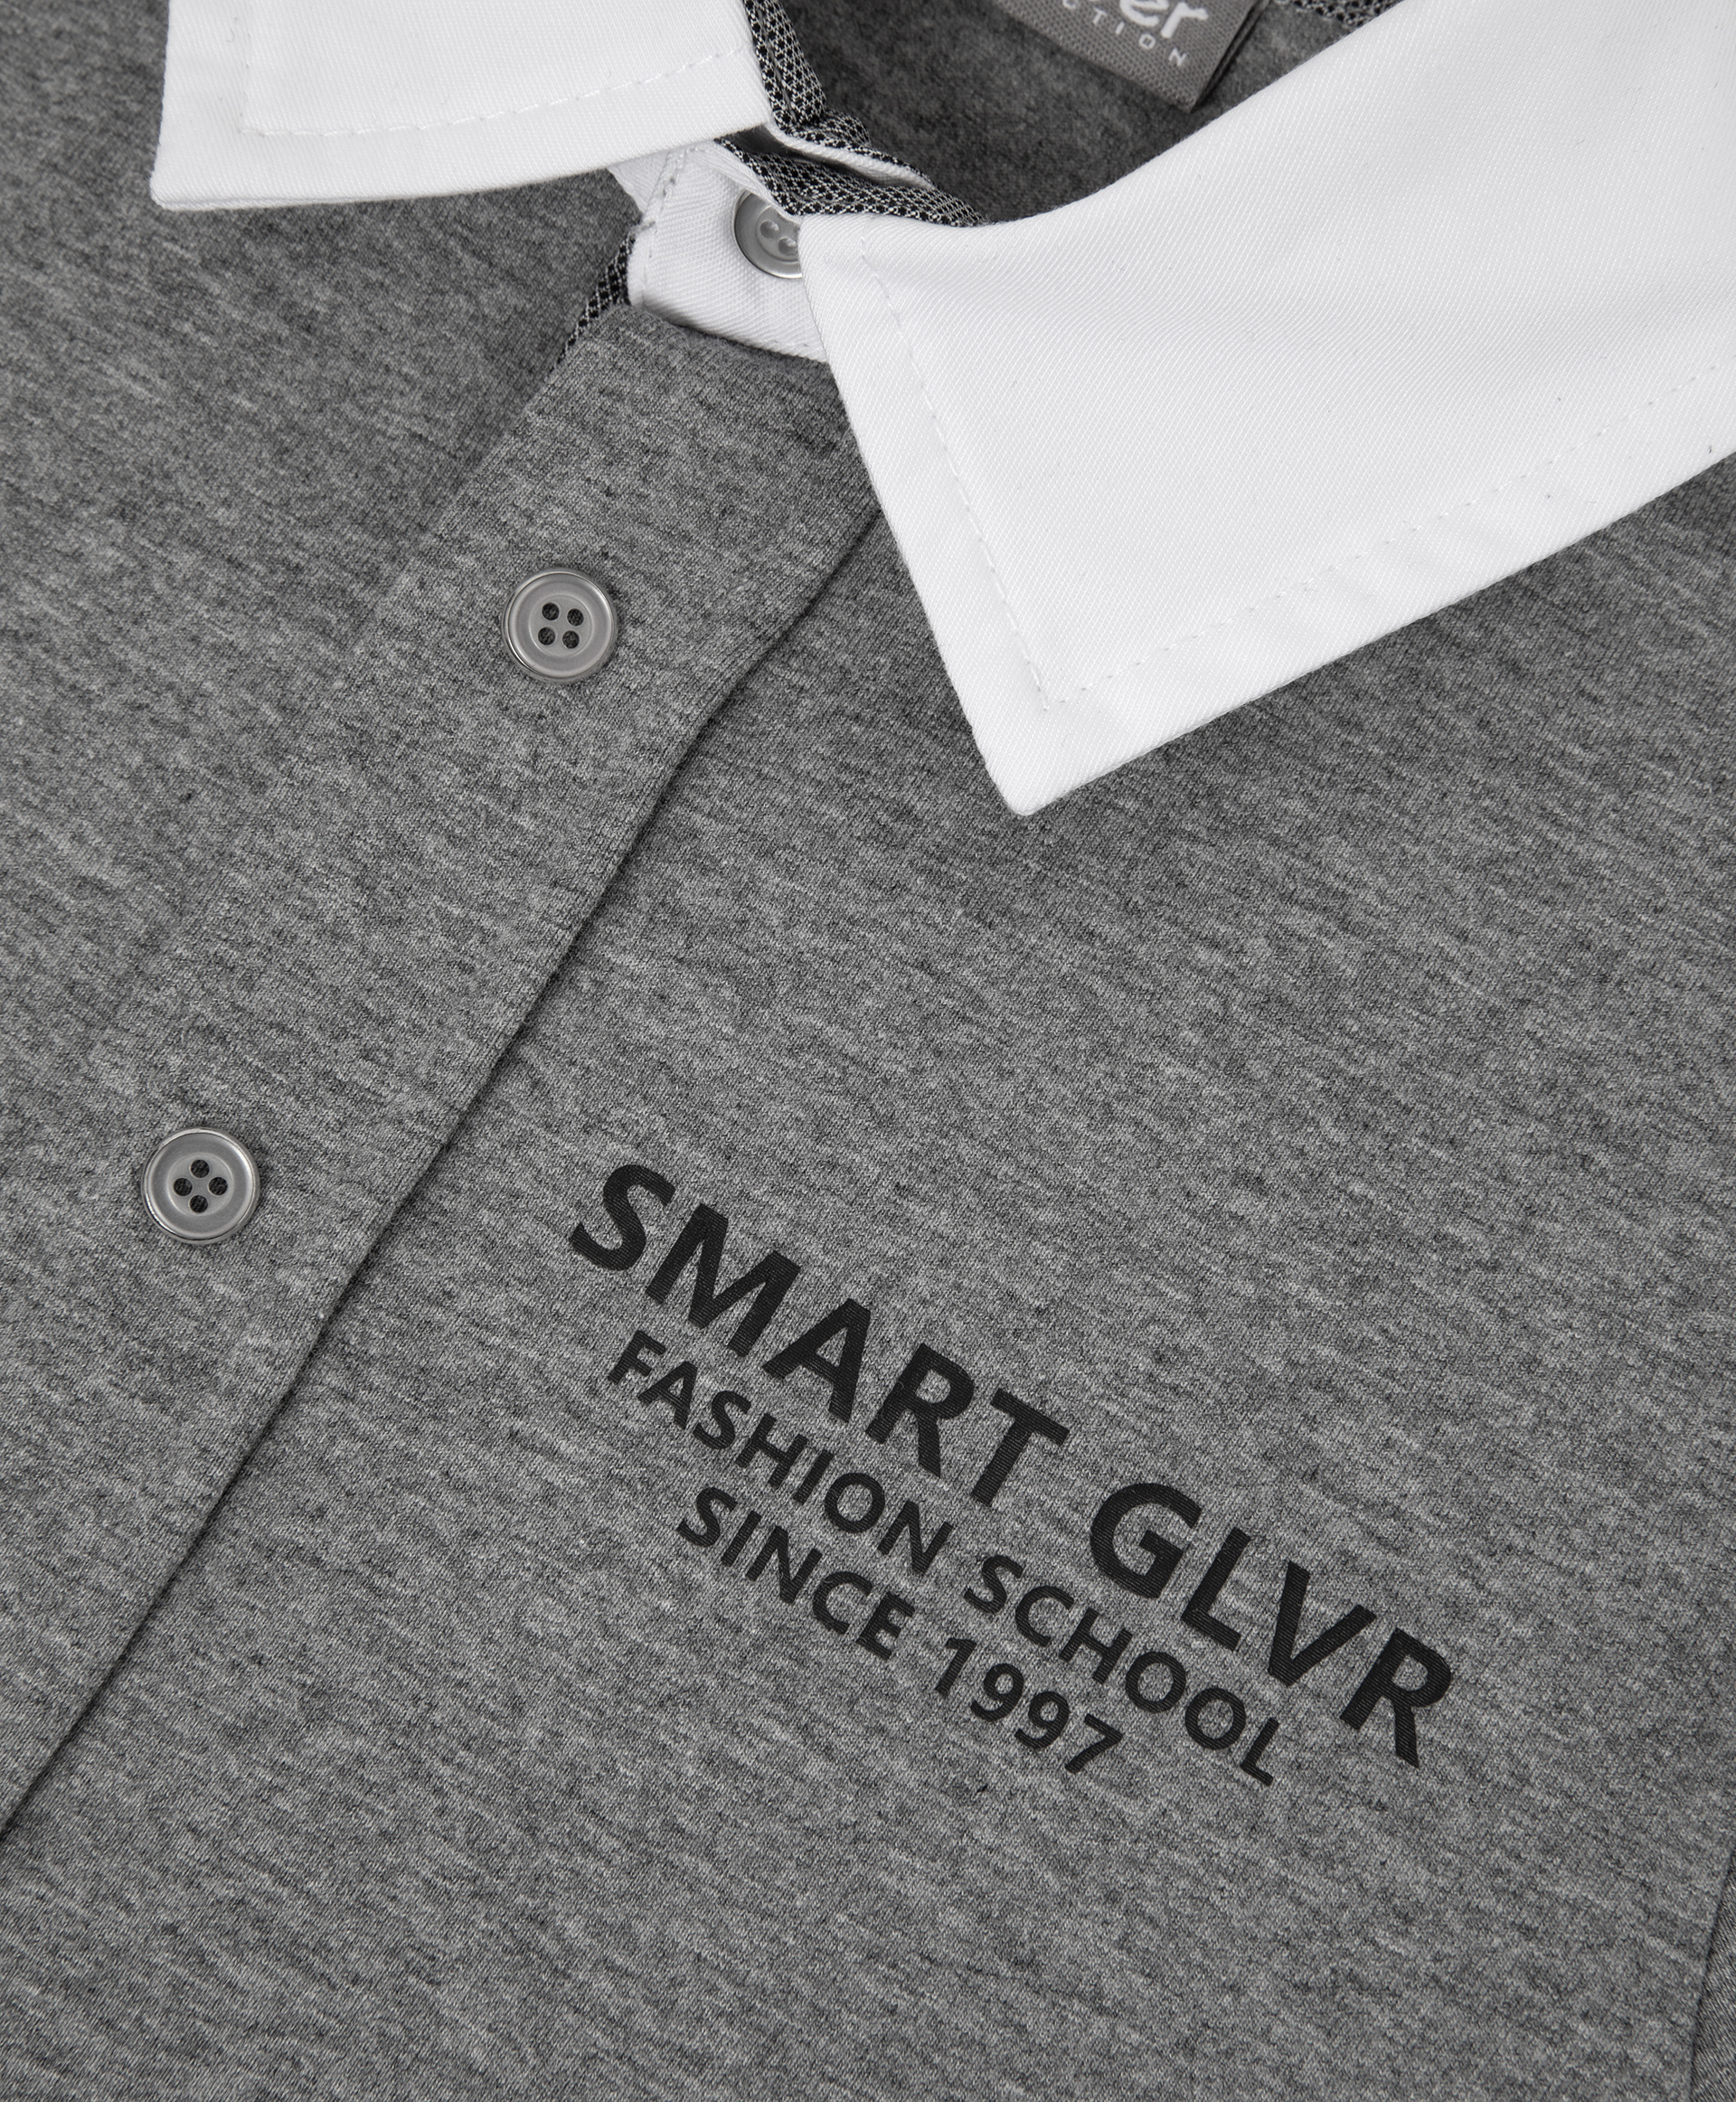 Рубашка серая с длинным рукавом Gulliver 200GSBC1403, размер 152, цвет серый - фото 3